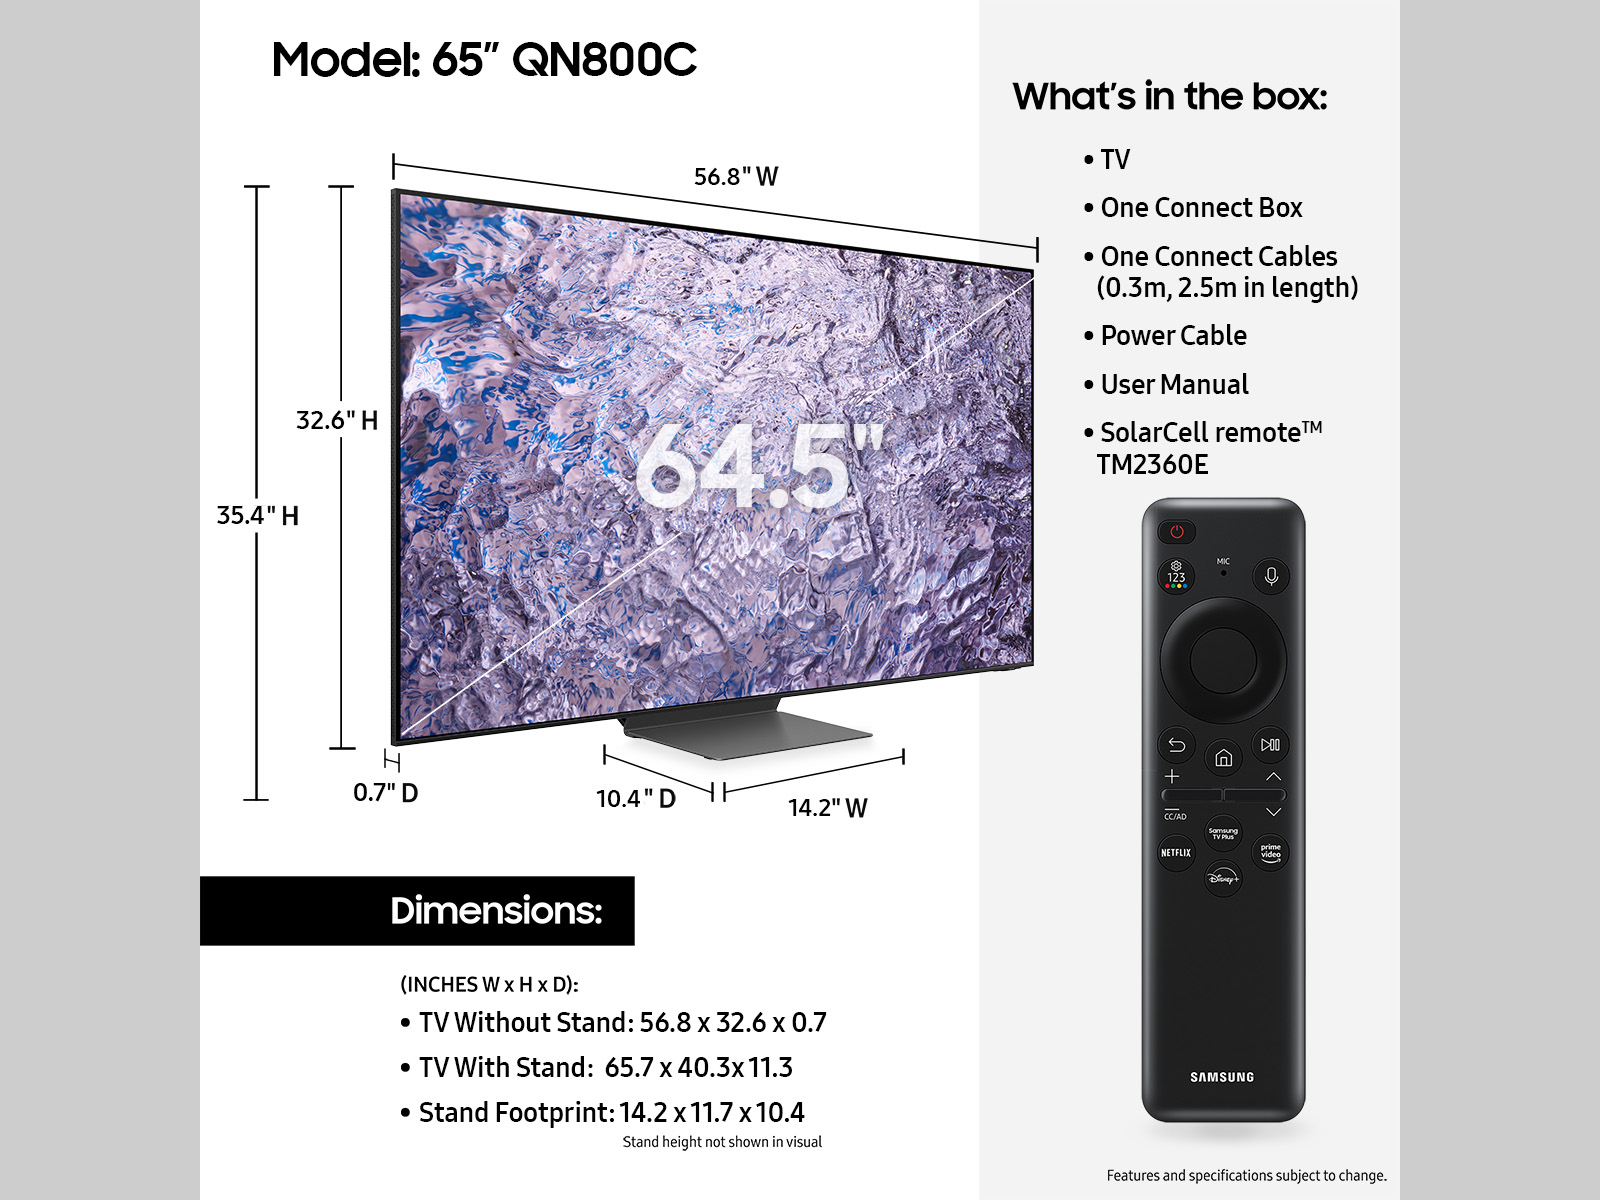 TV SAMSUNG NEO QLED 4K 85 POUCES QE85QN85C (2023)